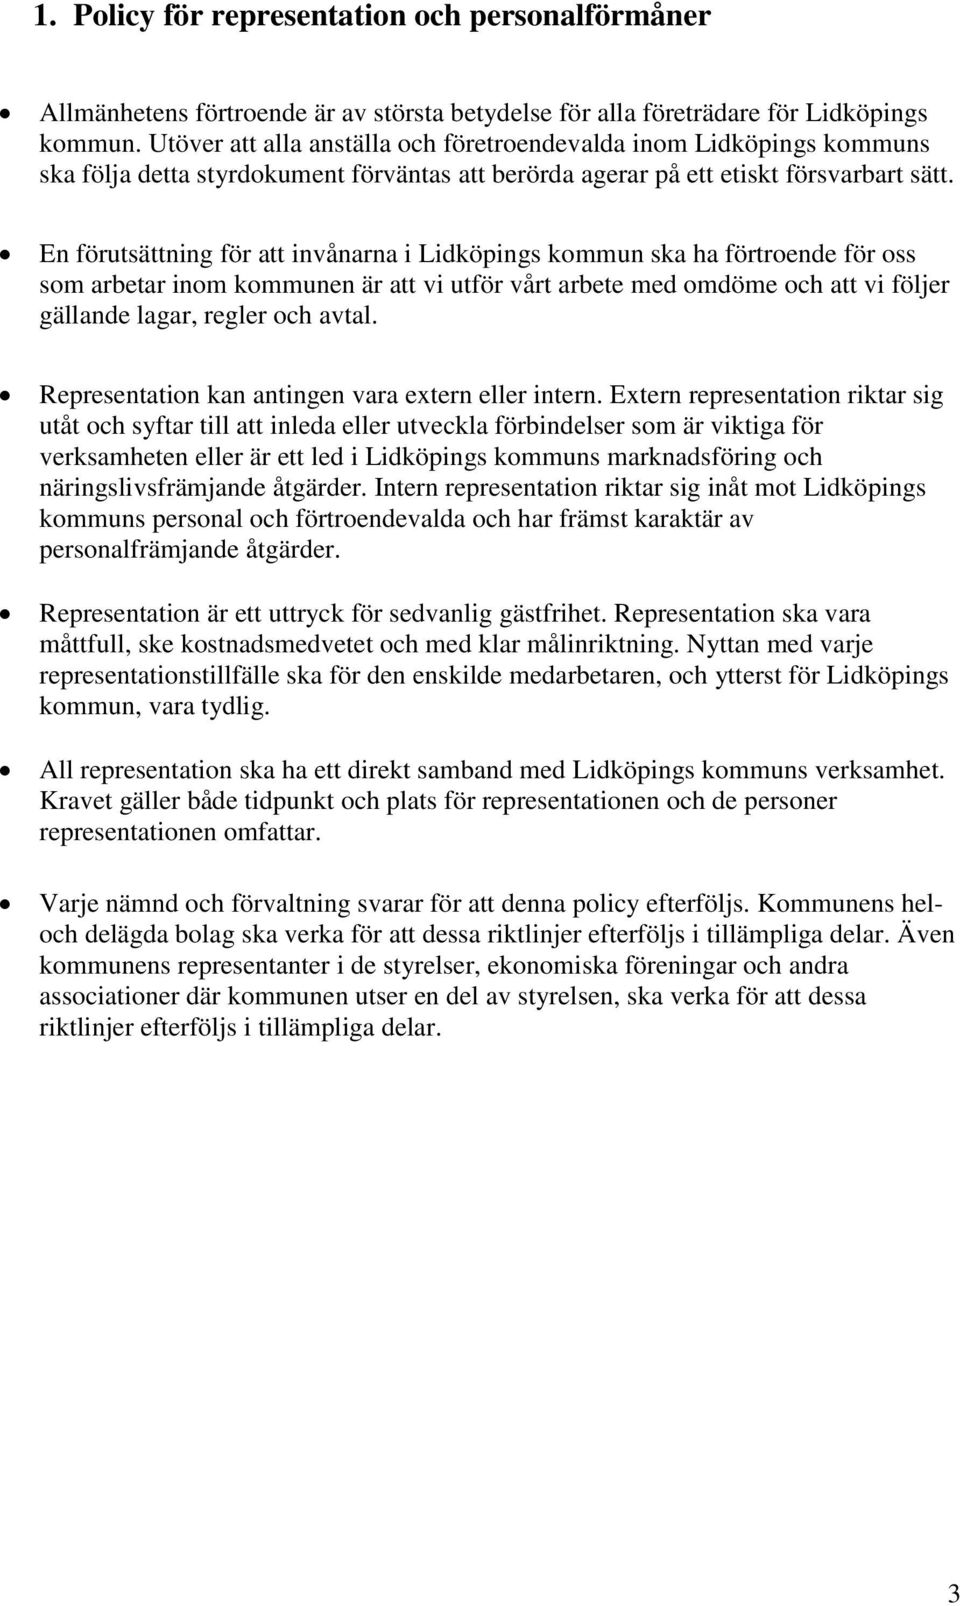 En förutsättning för att invånarna i Lidköpings kommun ska ha förtroende för oss som arbetar inom kommunen är att vi utför vårt arbete med omdöme och att vi följer gällande lagar, regler och avtal.